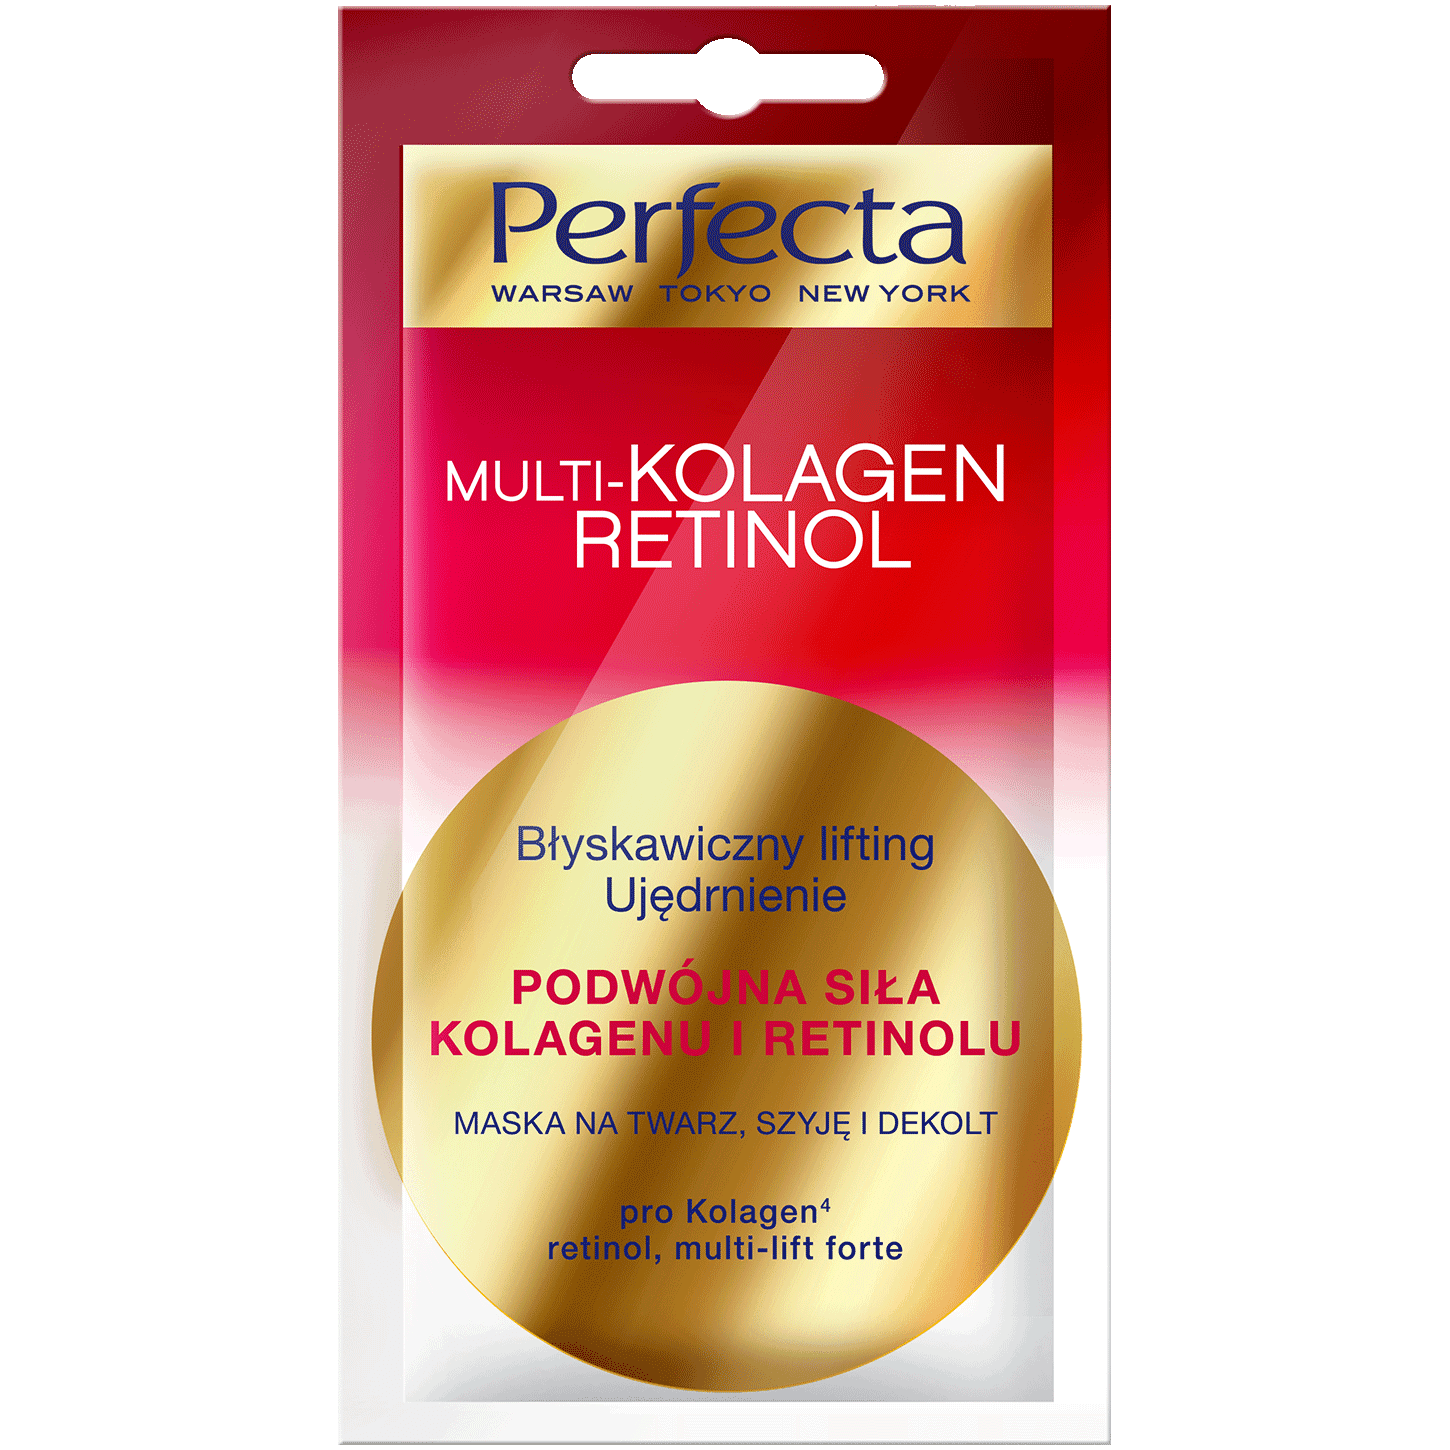 Perfecta Multikolagen Retinol маска для лица, шеи и зоны декольте, 8 мл